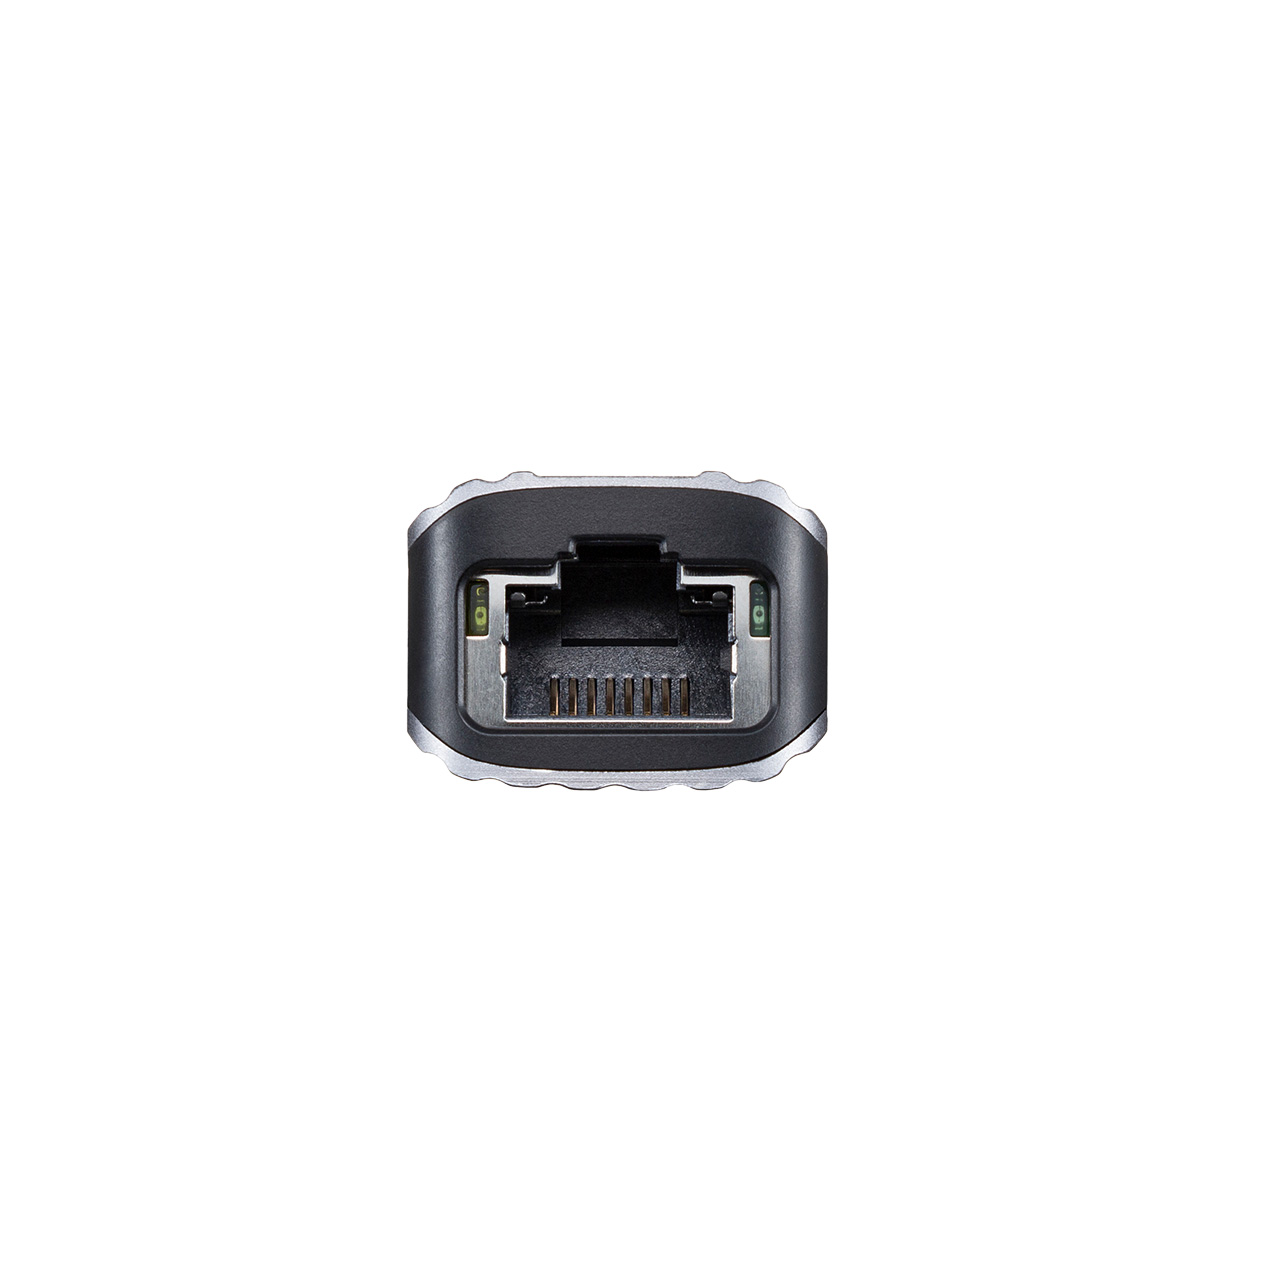 USBハブ HDMI出力対応 小型 ドッキングステーション LANポート  Type-C アルミ素材 ケーブル長50cm 400-HUBC12GM